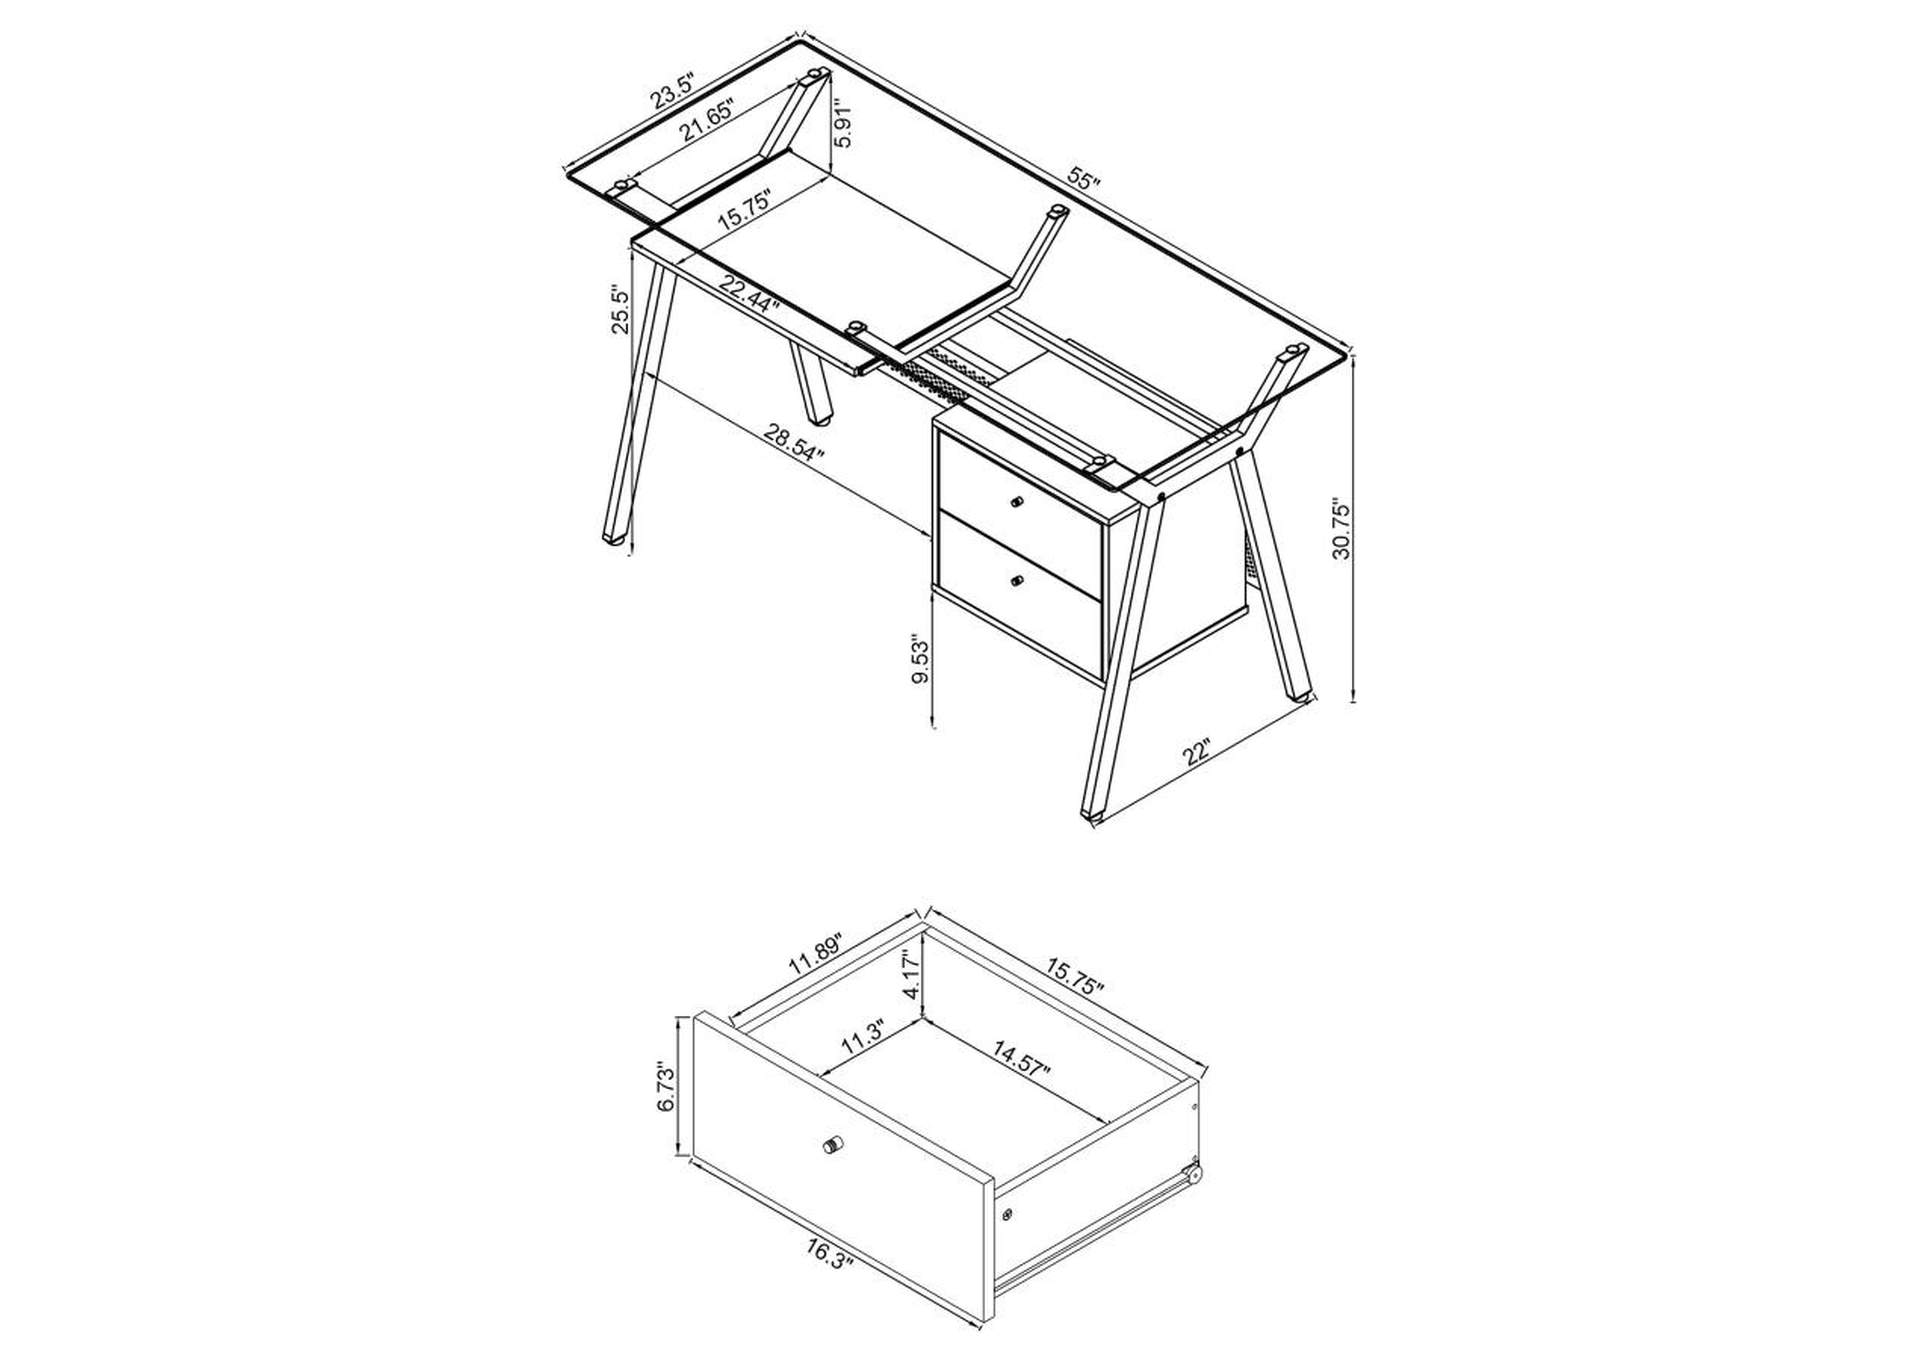 Weaving 2 - drawer Computer Desk Black,Coaster Furniture